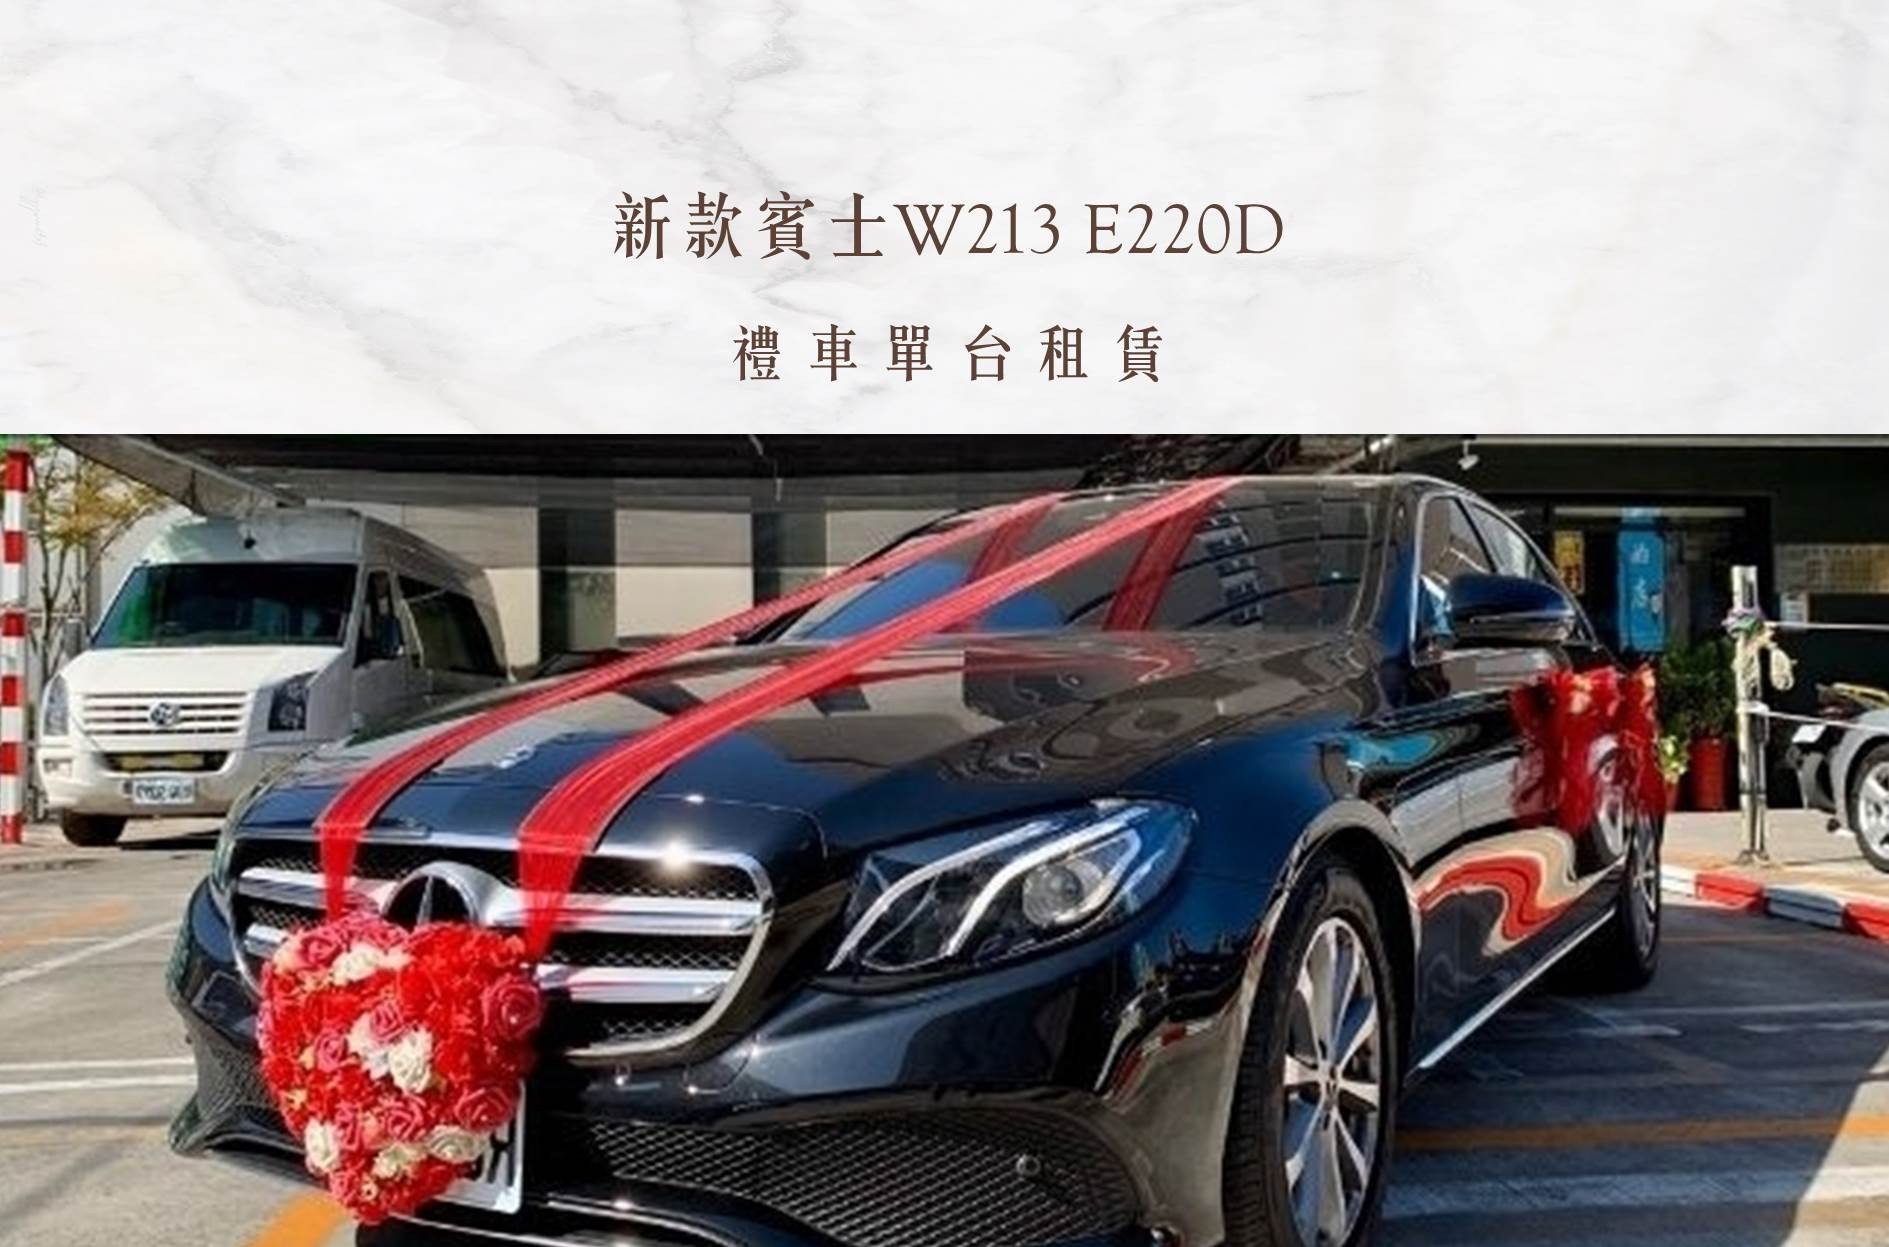 新款賓士W213 E220D